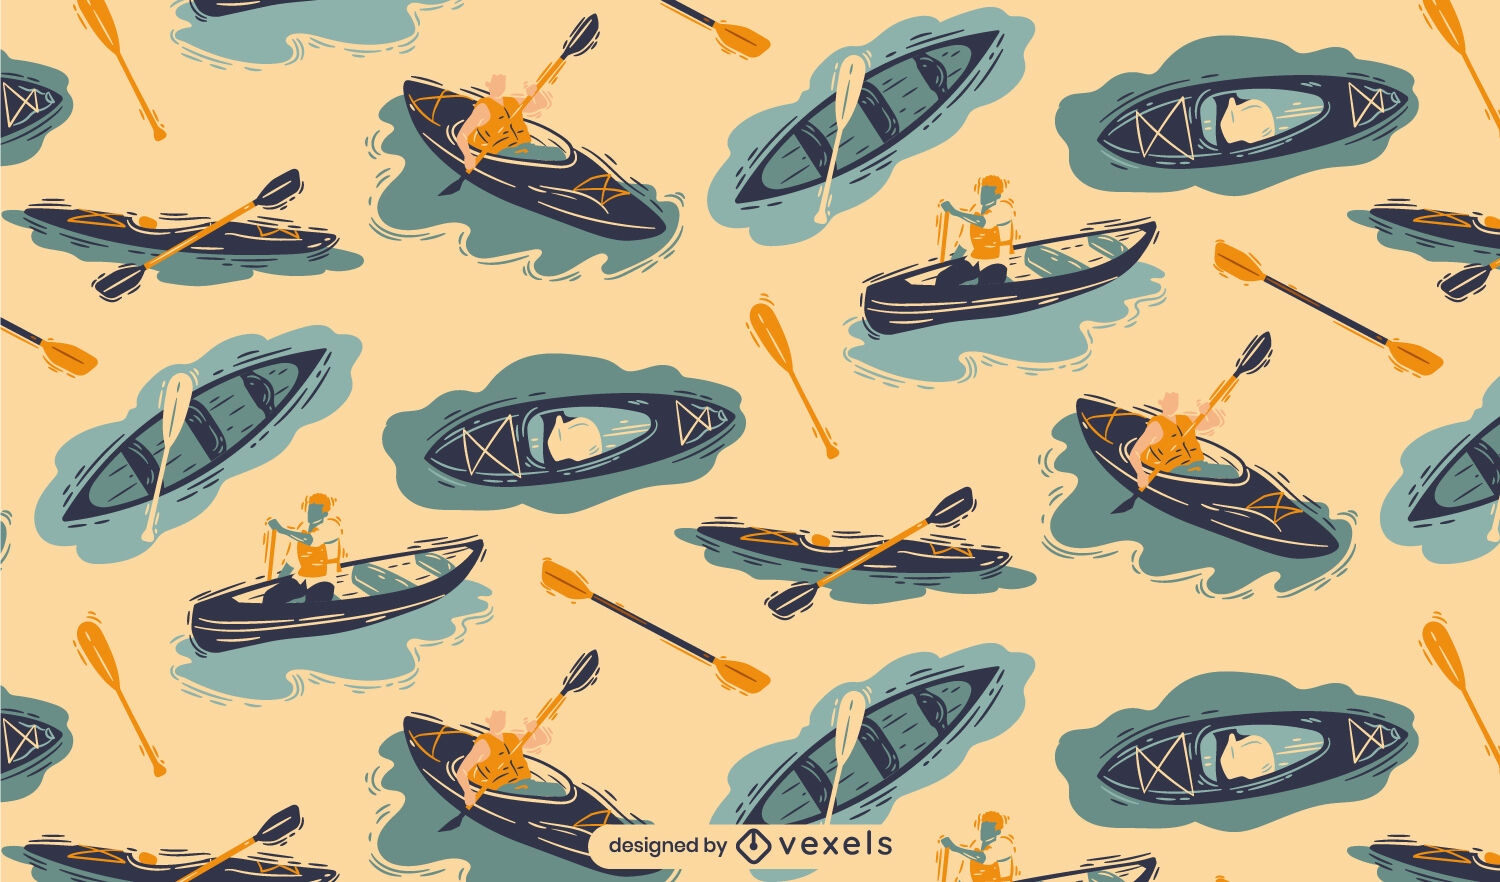 Canoa y kayak en diseño de patrón de lago